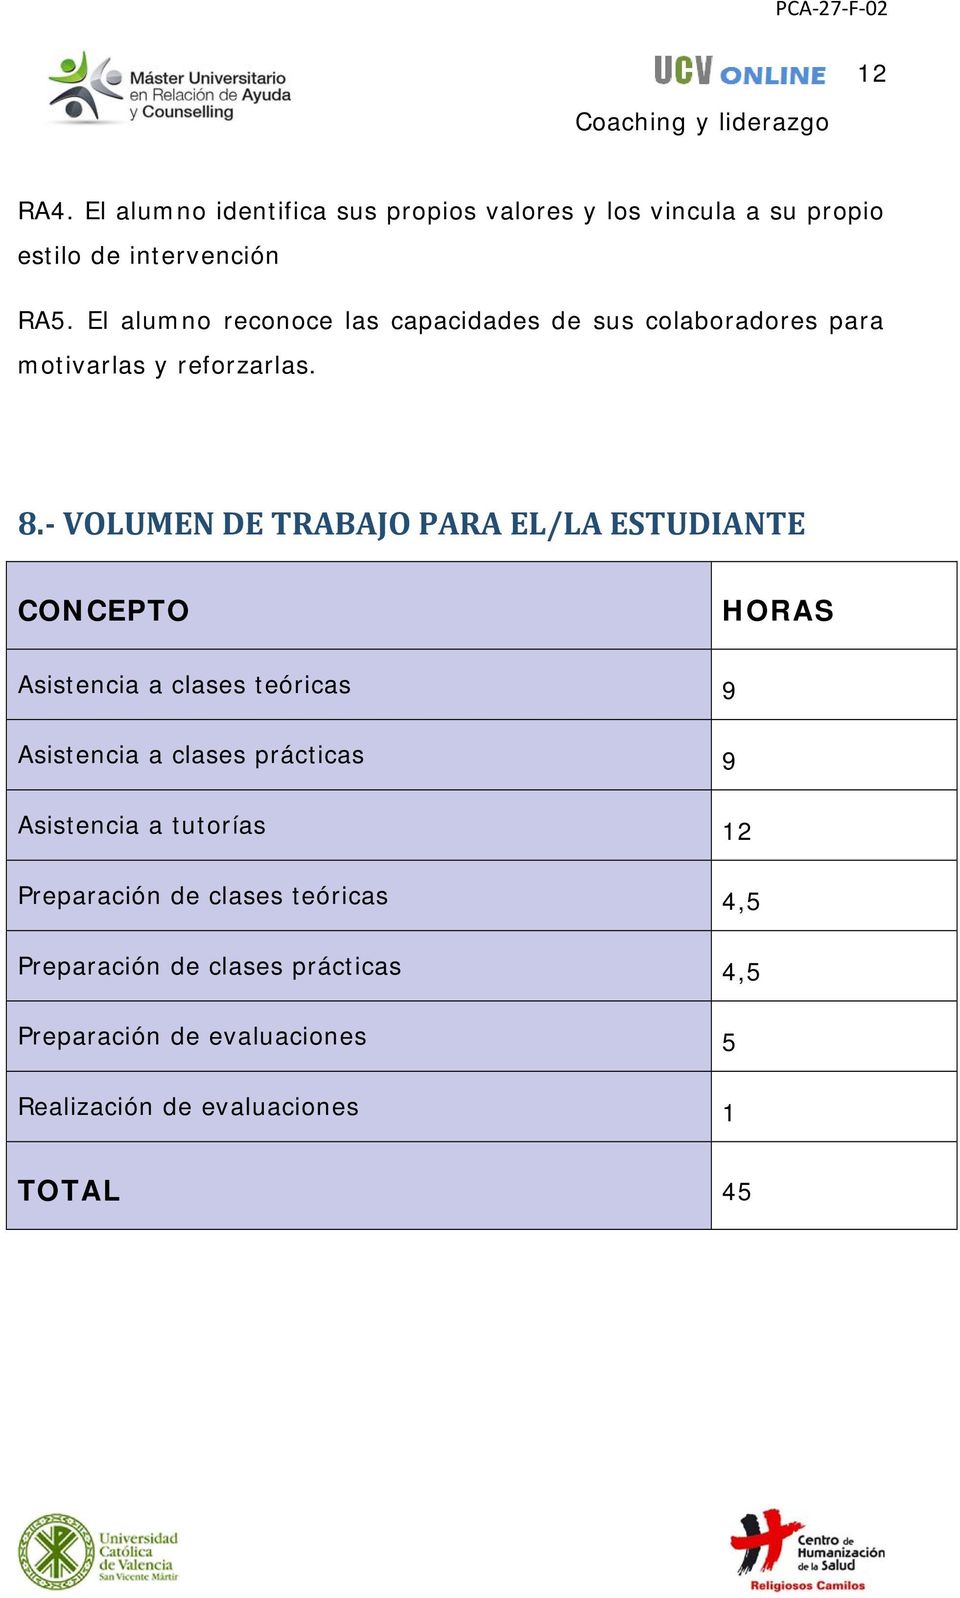 VOLUMEN DE TRABAJO PARA EL/LA ESTUDIANTE CONCEPTO HORAS Asistencia a clases teóricas 9 Asistencia a clases prácticas 9